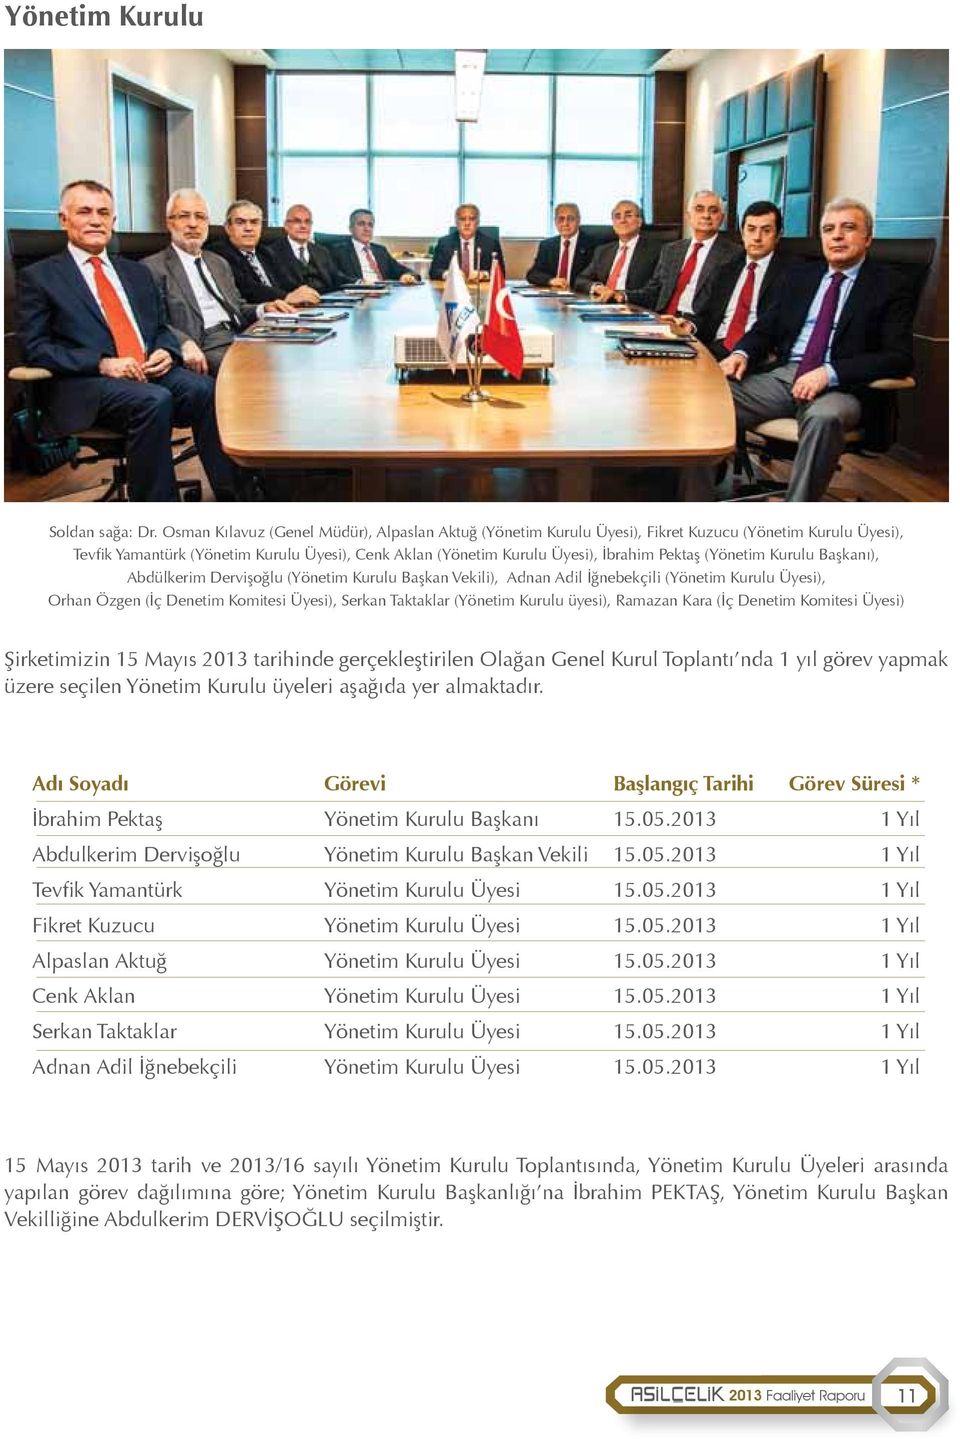 (Yönetim Kurulu Başkanı), Abdülkerim Dervişoğlu (Yönetim Kurulu Başkan Vekili), Adnan Adil İğnebekçili (Yönetim Kurulu Üyesi), Orhan Özgen (İç Denetim Komitesi Üyesi), Serkan Taktaklar (Yönetim